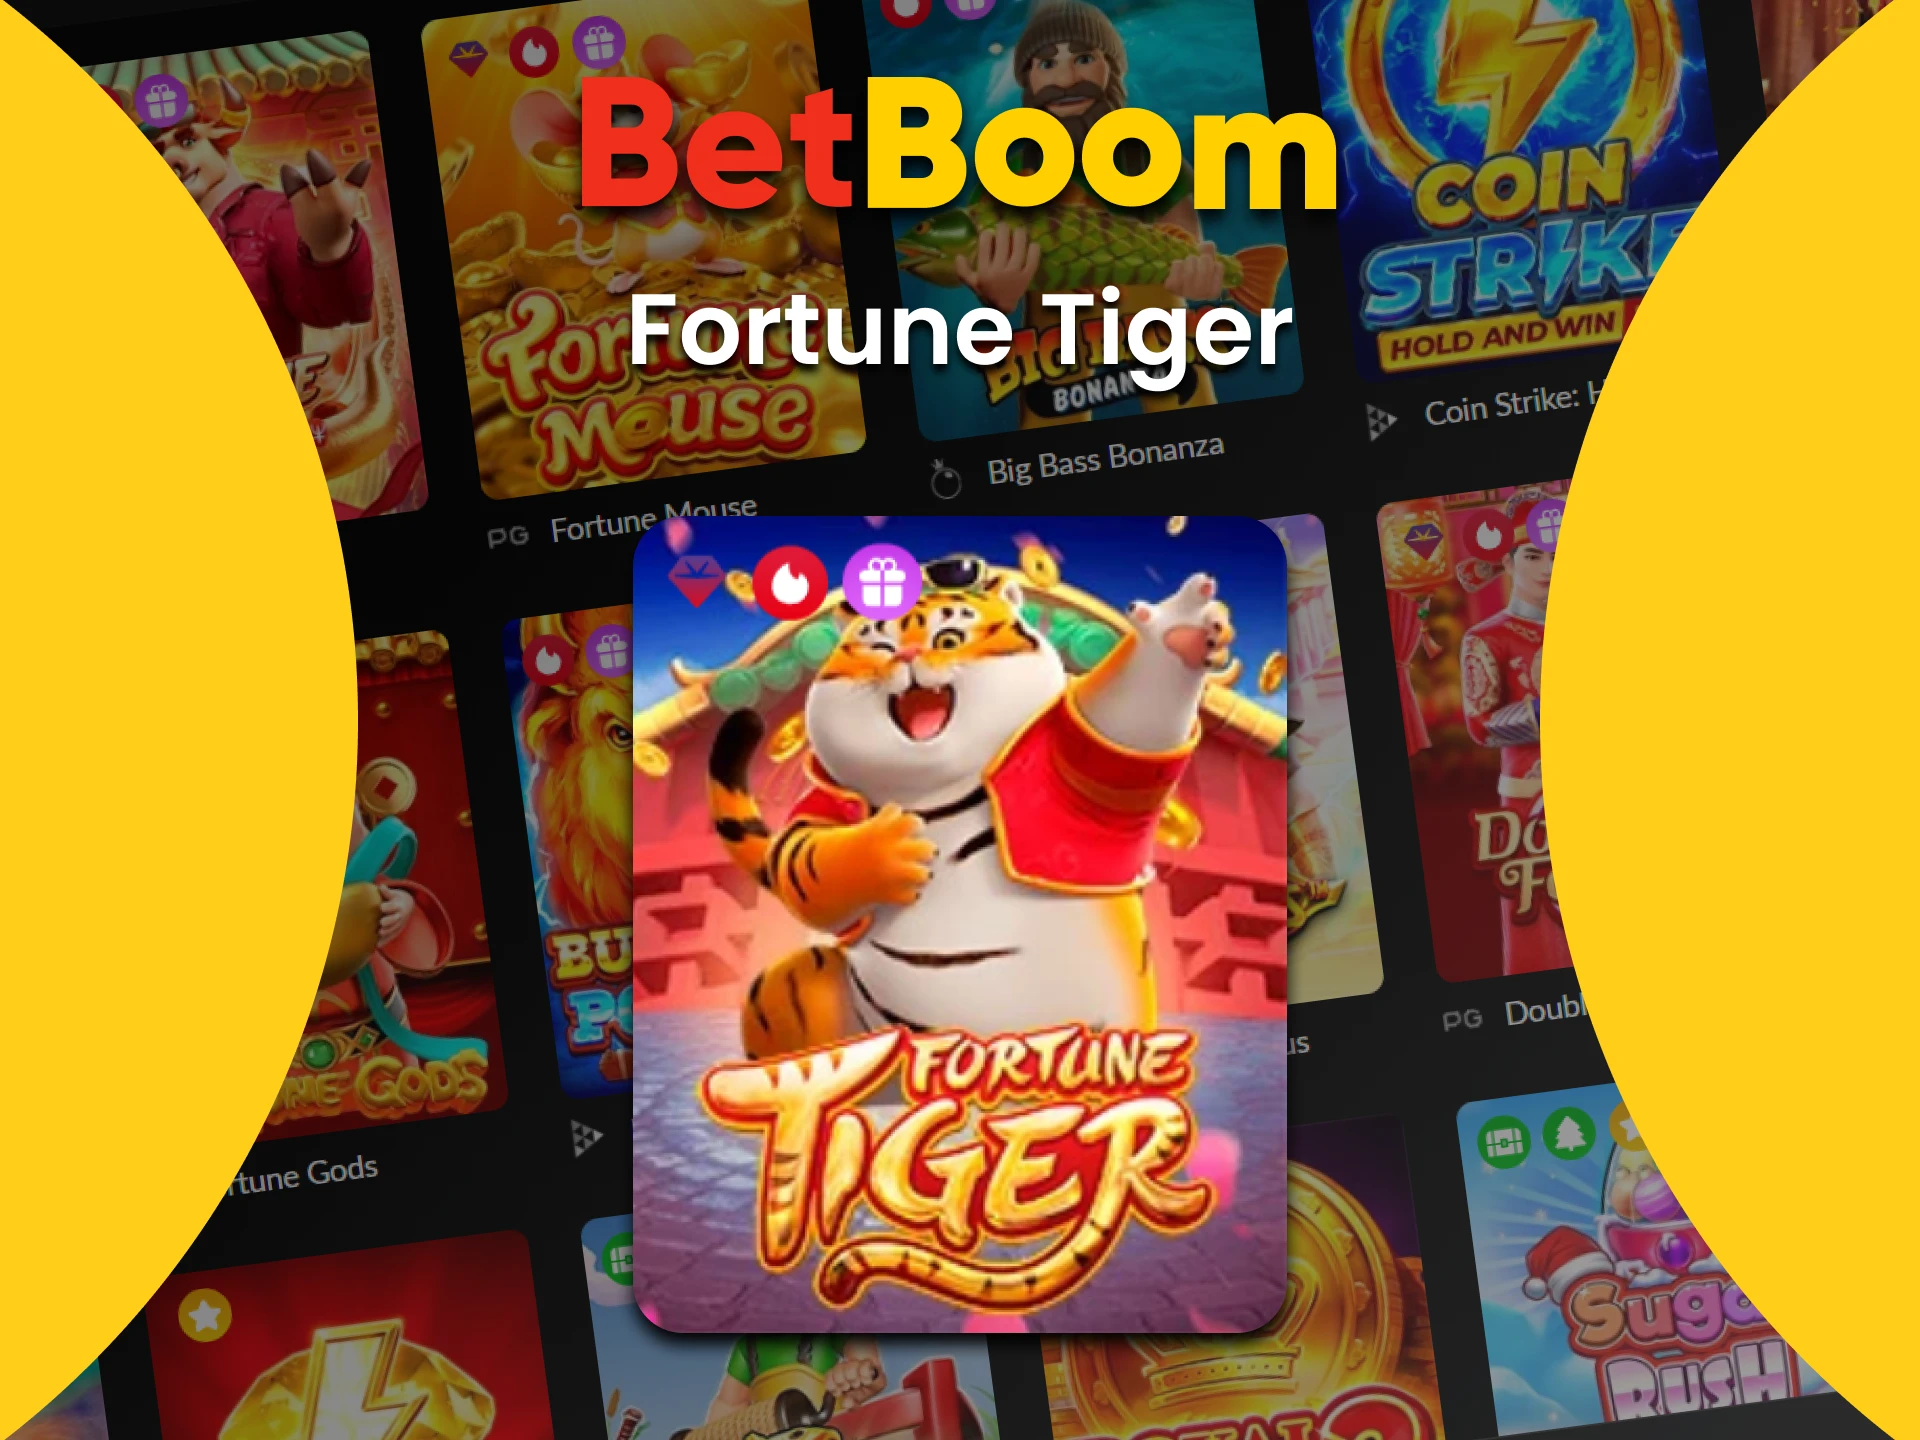 Vá para a seção de slots no BetBoom para jogar Fortune Tiger.